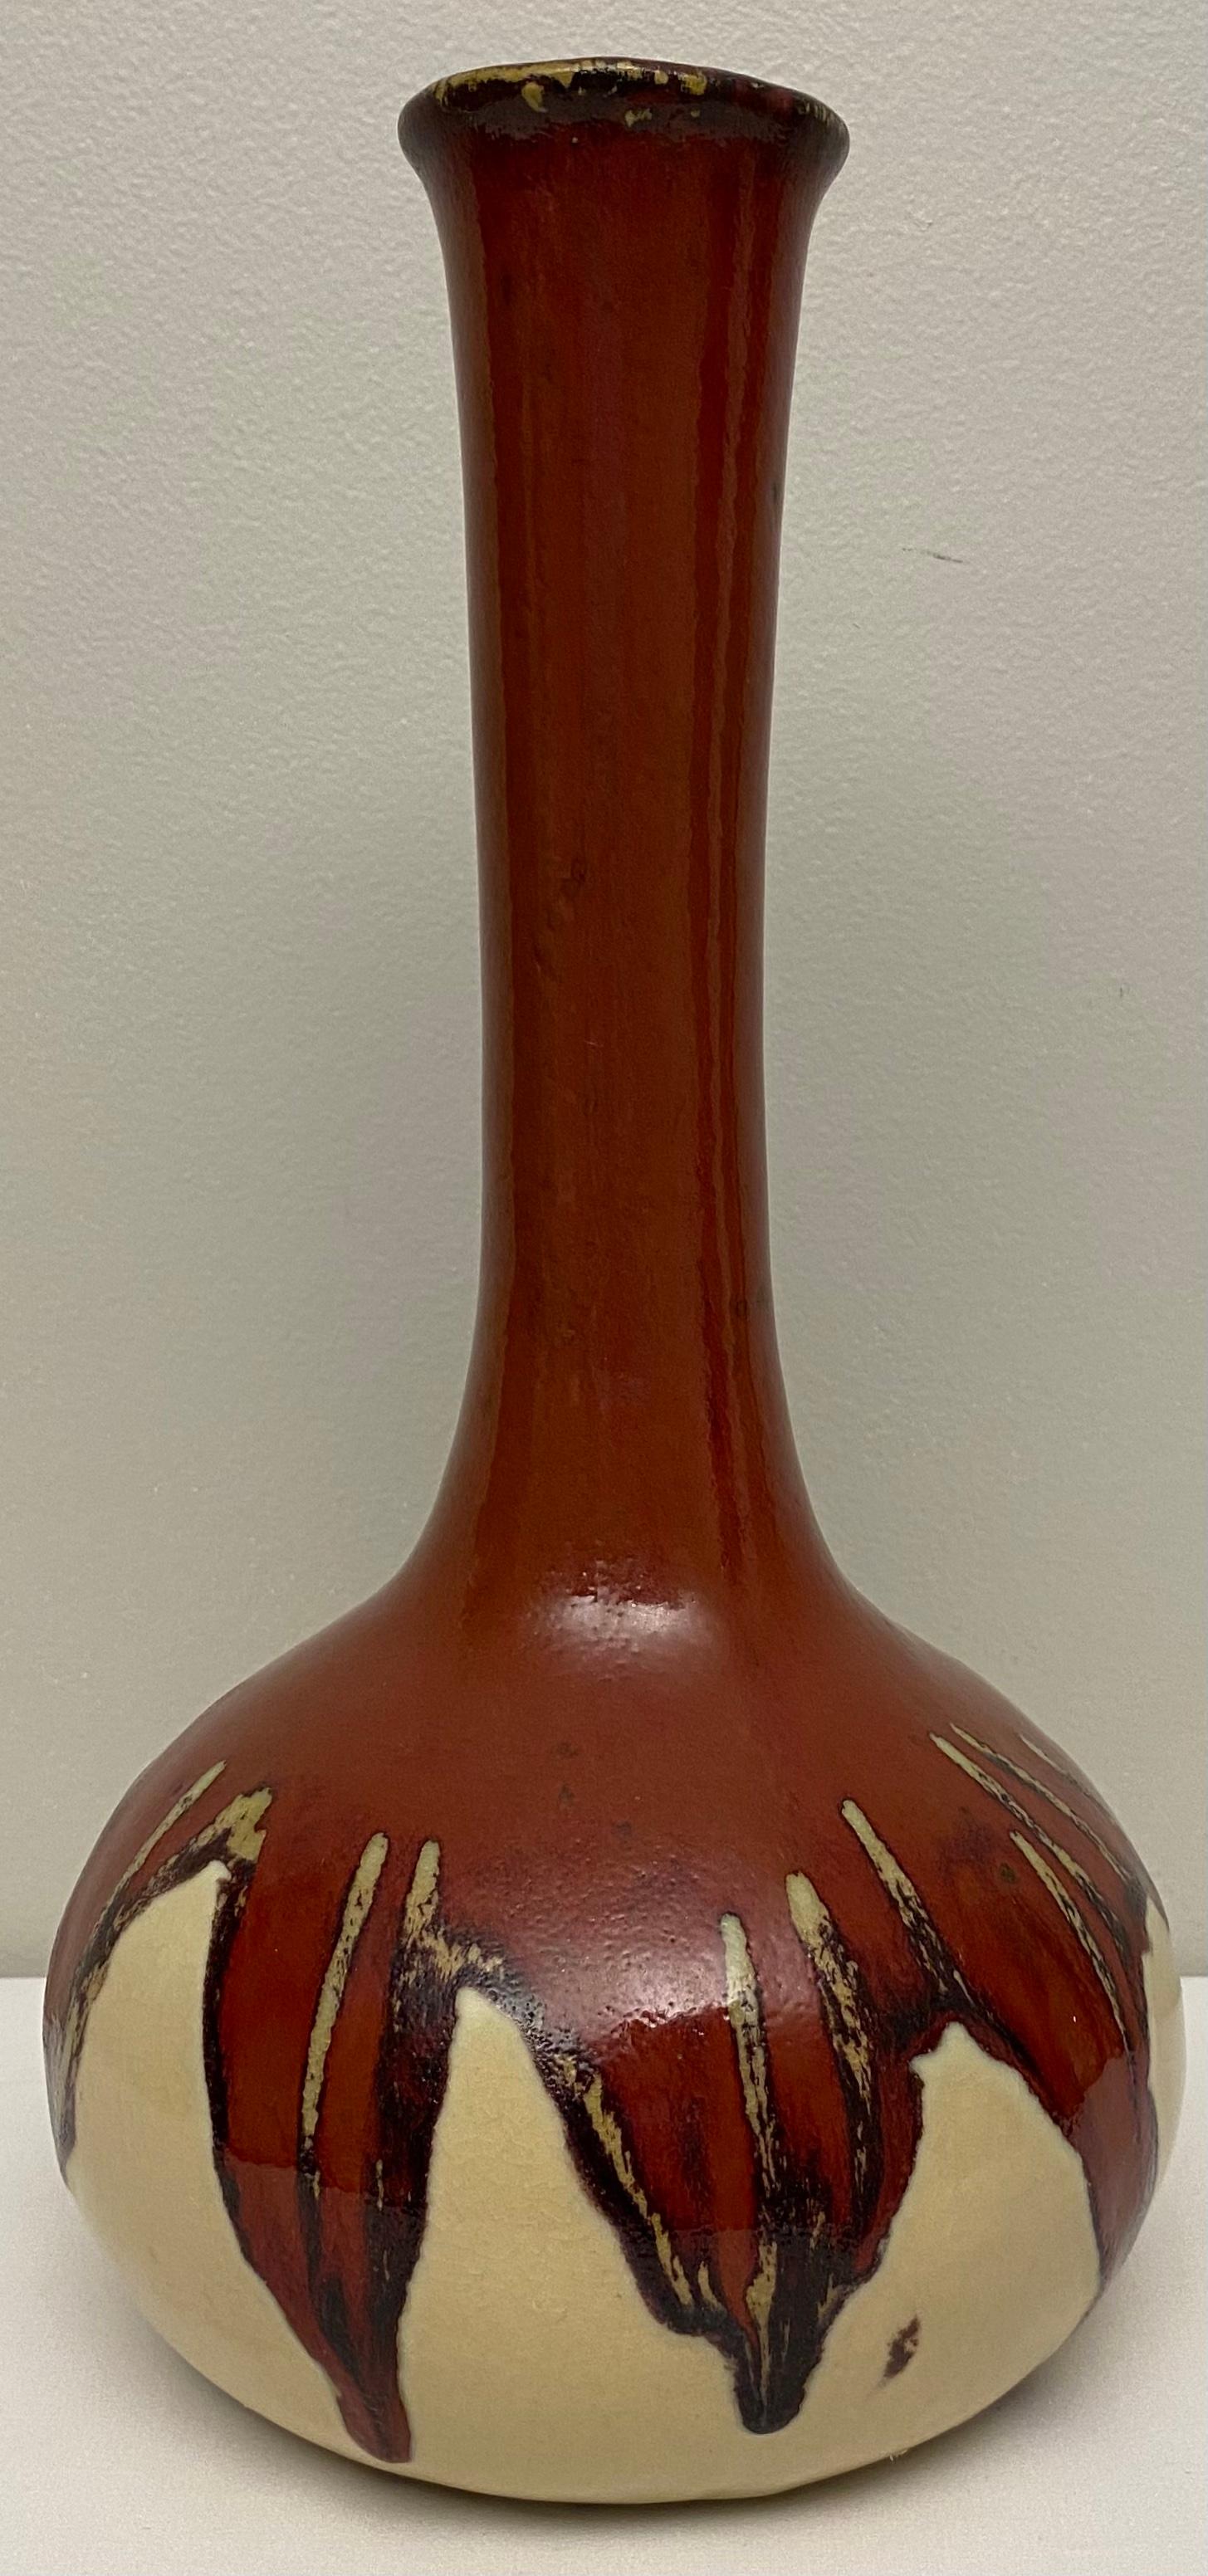 Un vase de qualité en céramique de style amérindien du sud-ouest. 
Les teintes neutres de ce vase le rendent particulièrement adapté aux décors rustiques ou contemporains. 

Parfait pour présenter vos fleurs préférées sur une table, un comptoir ou